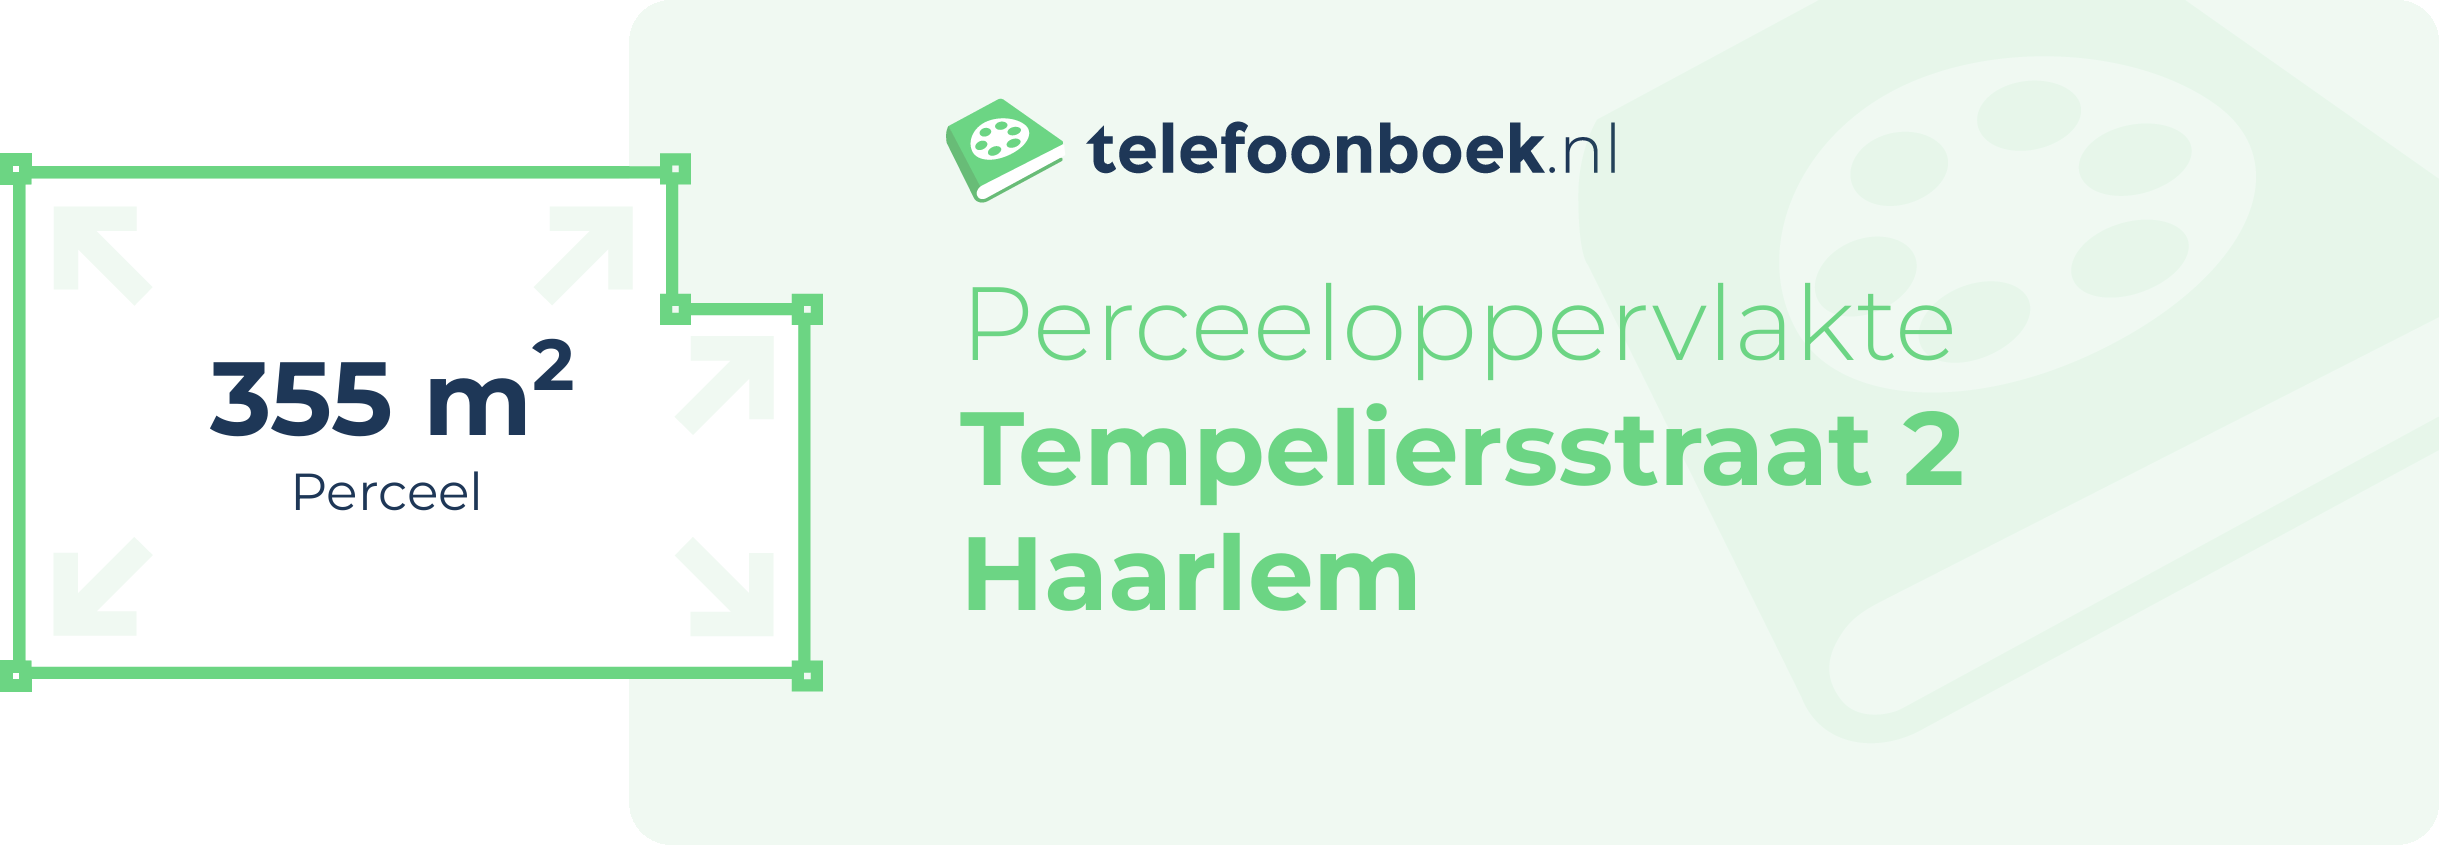 Perceeloppervlakte Tempeliersstraat 2 Haarlem